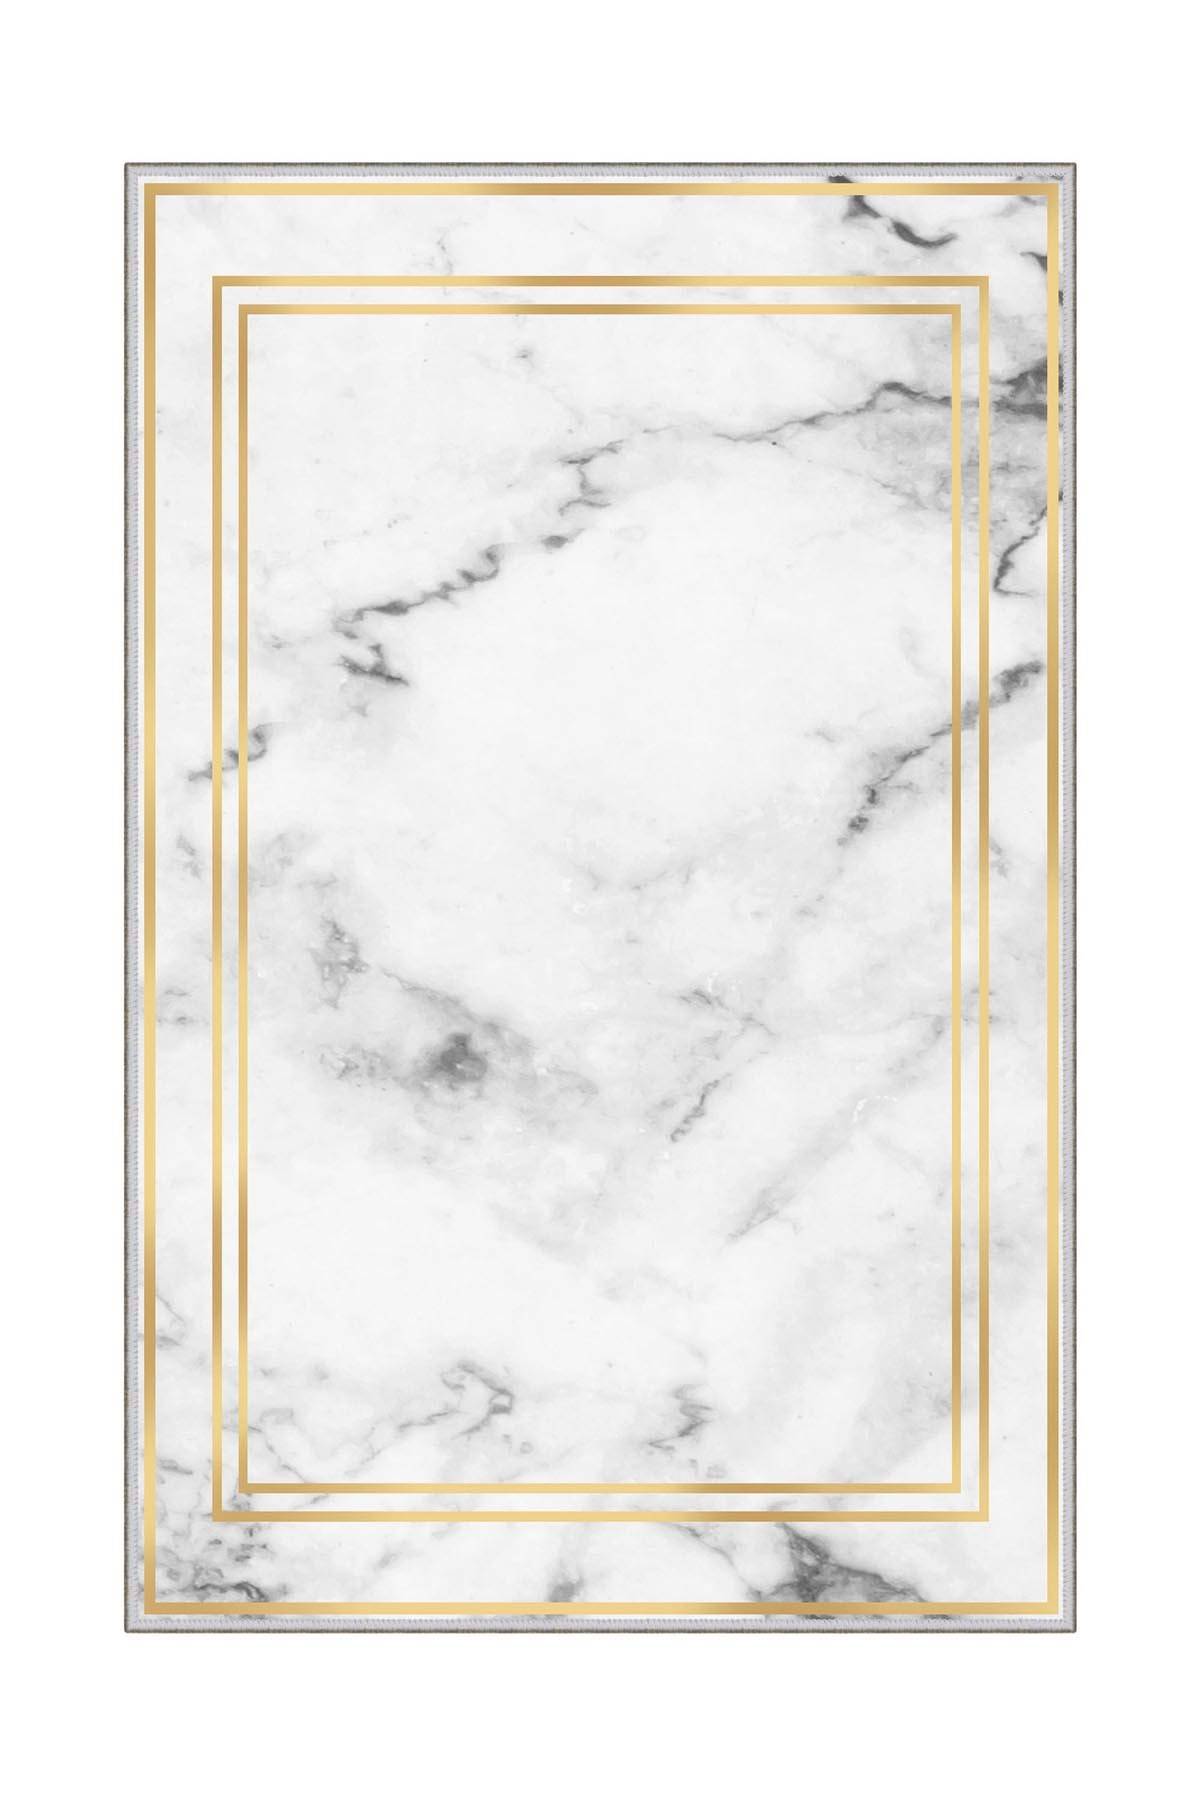 Ozos tapijt 50x80cm Wit marmer effect en gouden lijsten